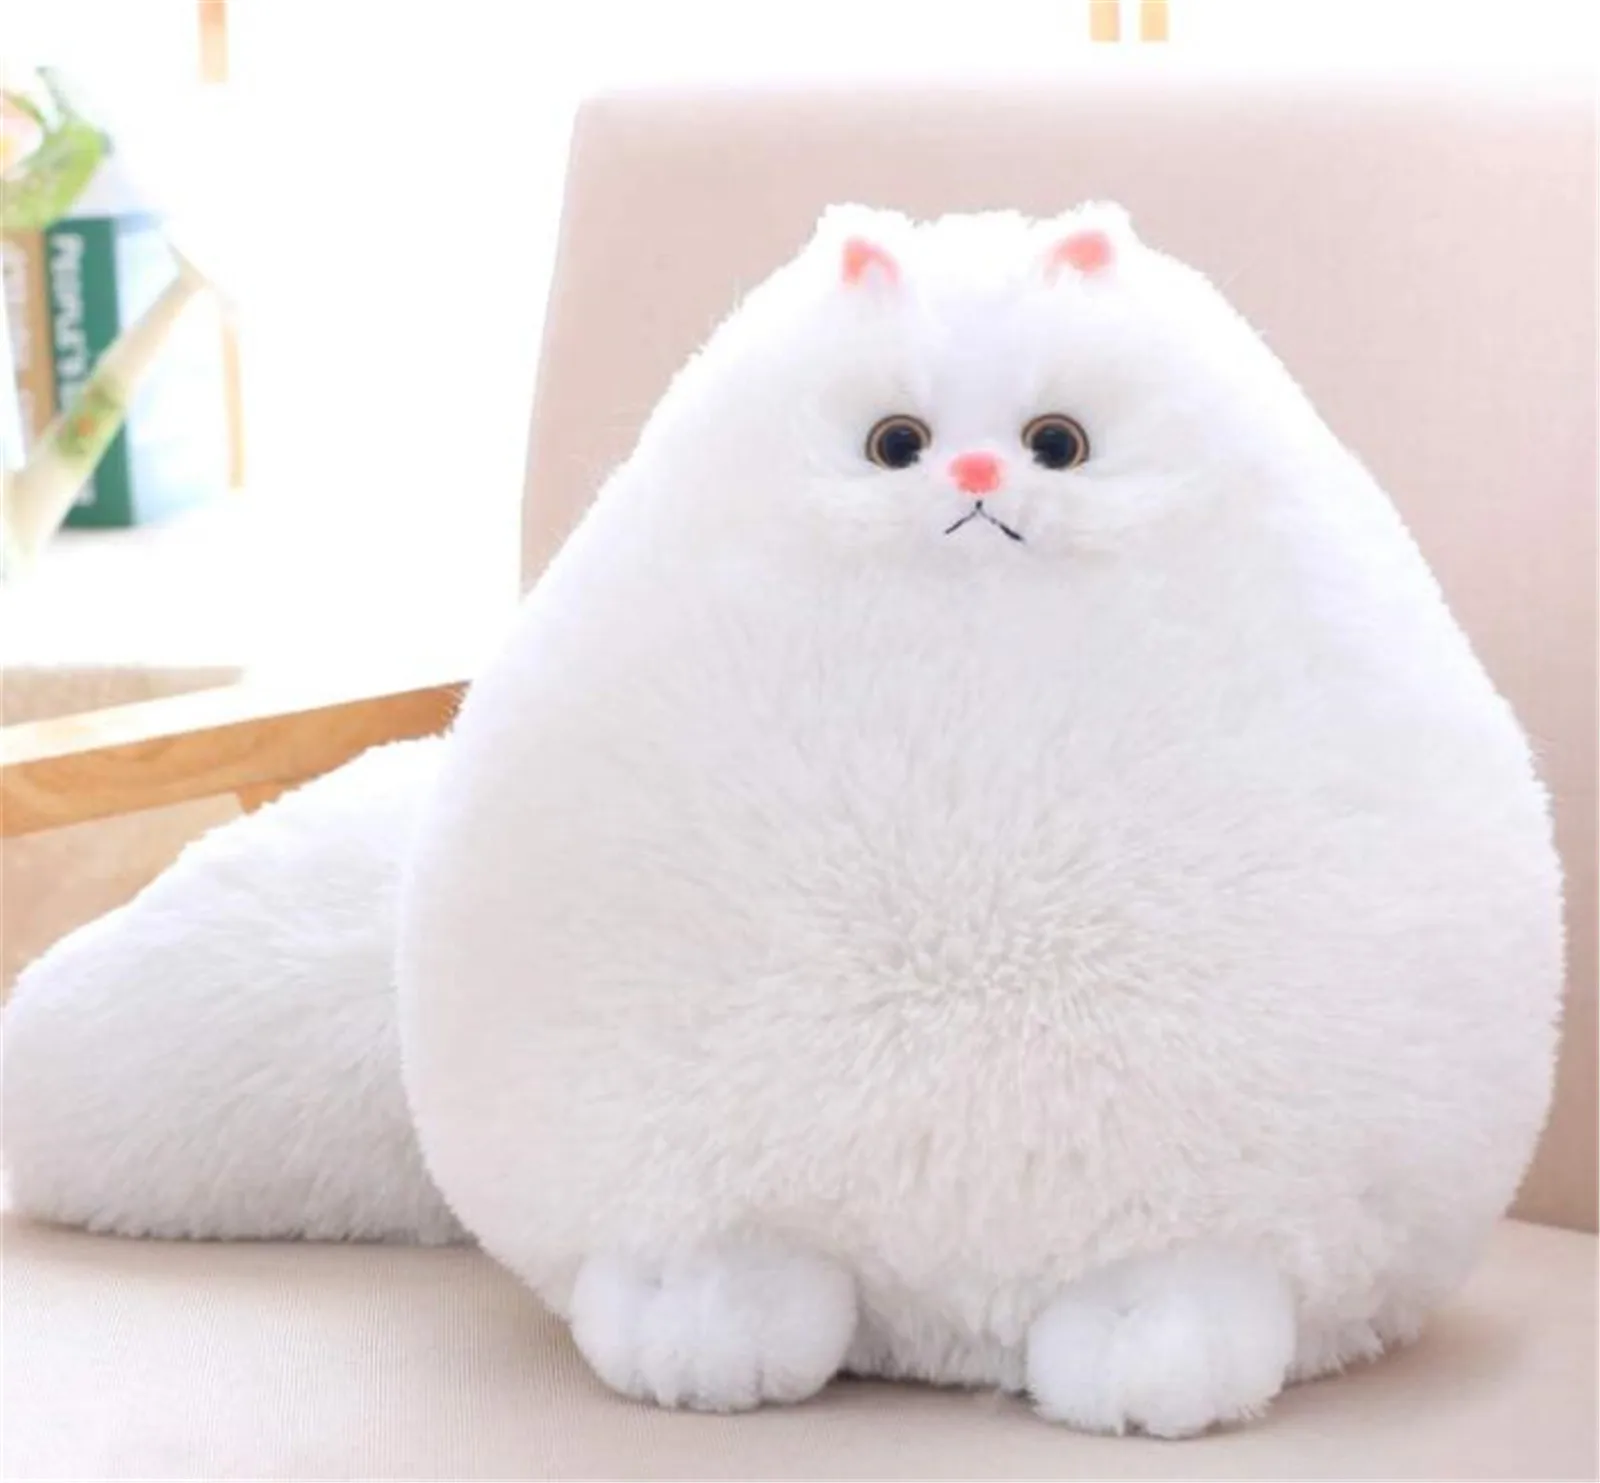 Fluffy White Persian Cat Stuffed Animal Plush Toy Pet Doll Kids Soft Cuddle Gift 